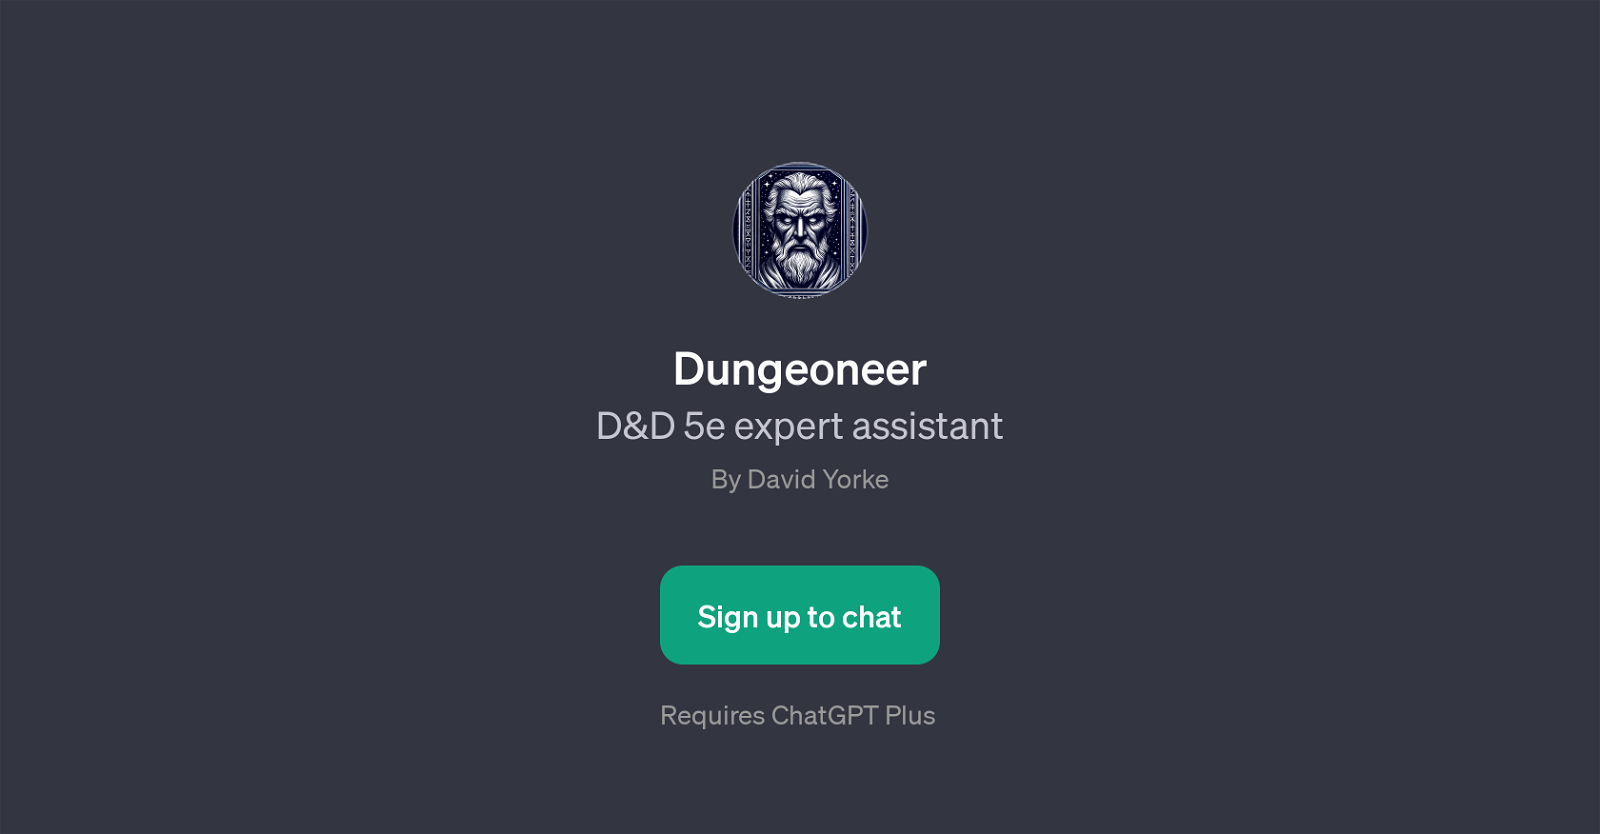 Dungeoneer website